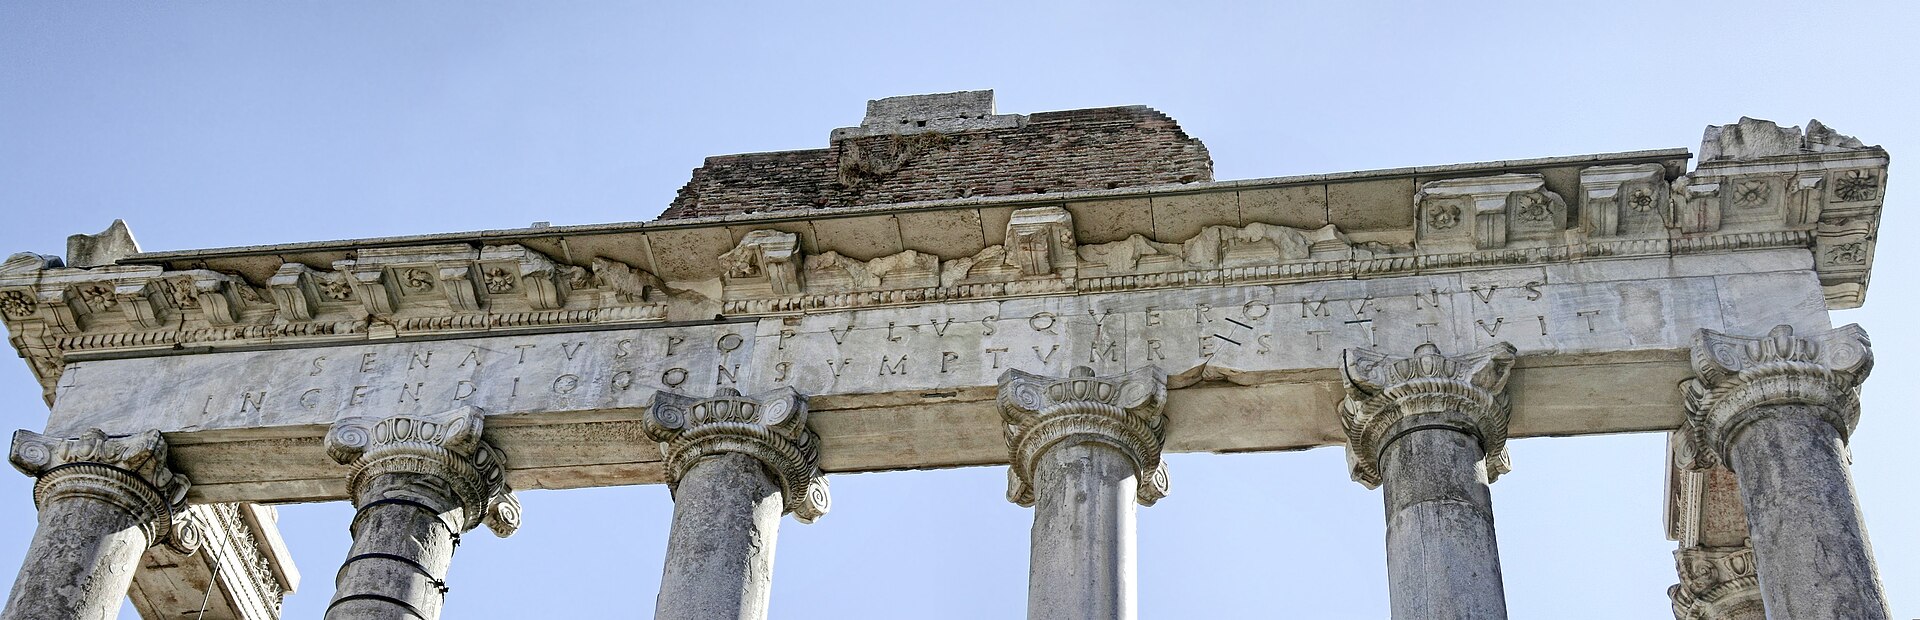 Le forum Romanum, le forum romain. 1920px-Temple-saturne-inscription